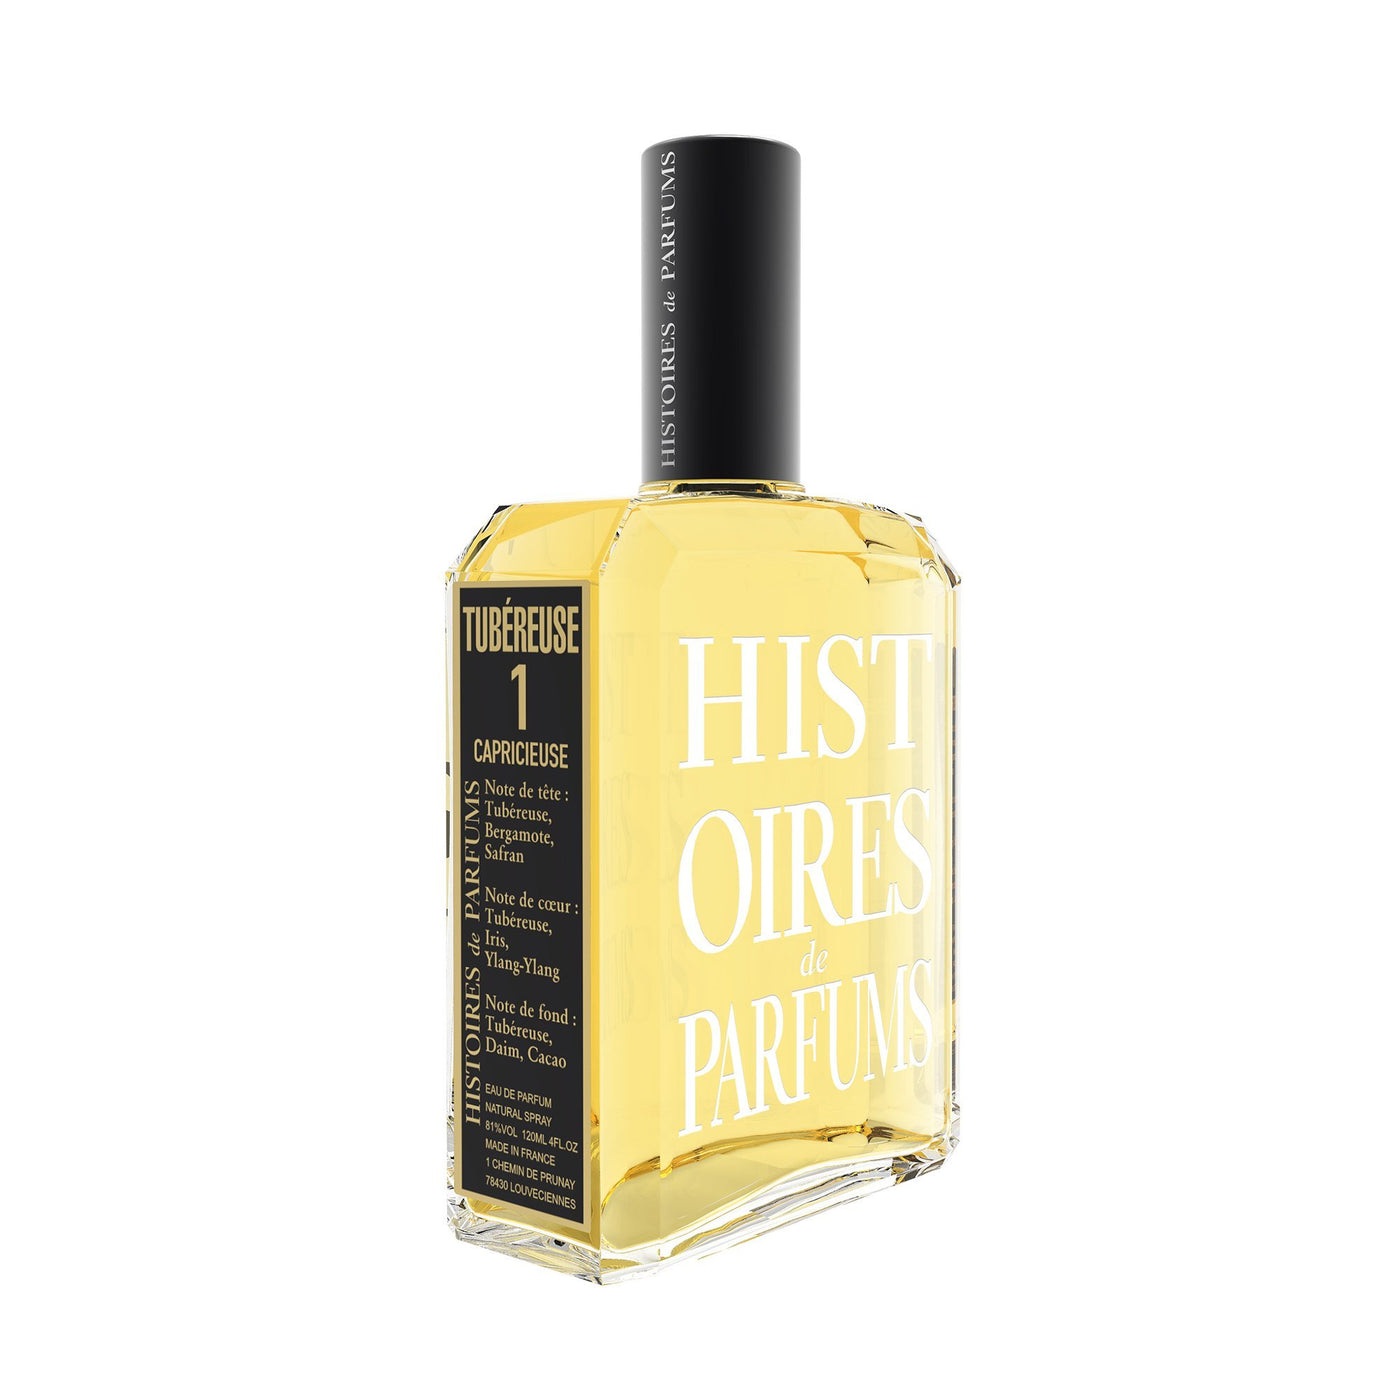 Histoires de Parfums Tubereuse 1 EDP 120ml